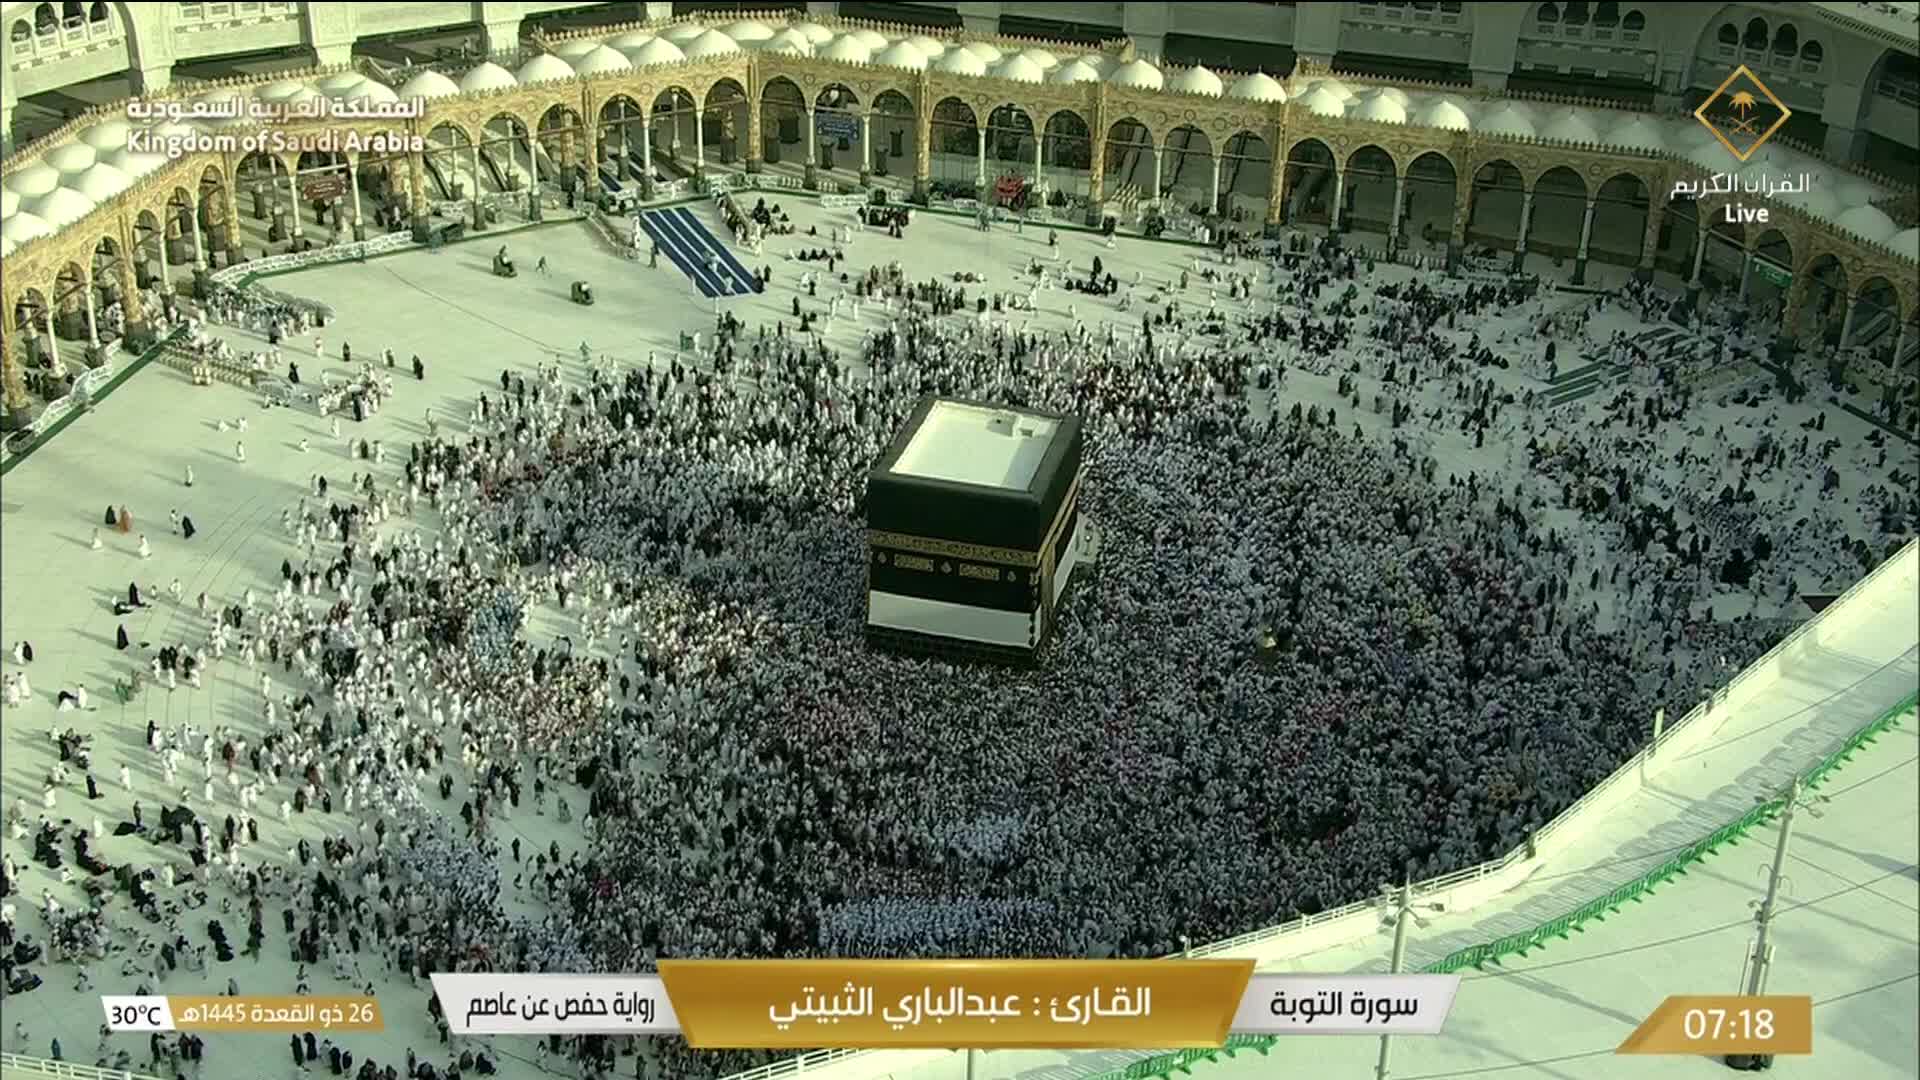 Mecca Thu. 07:36